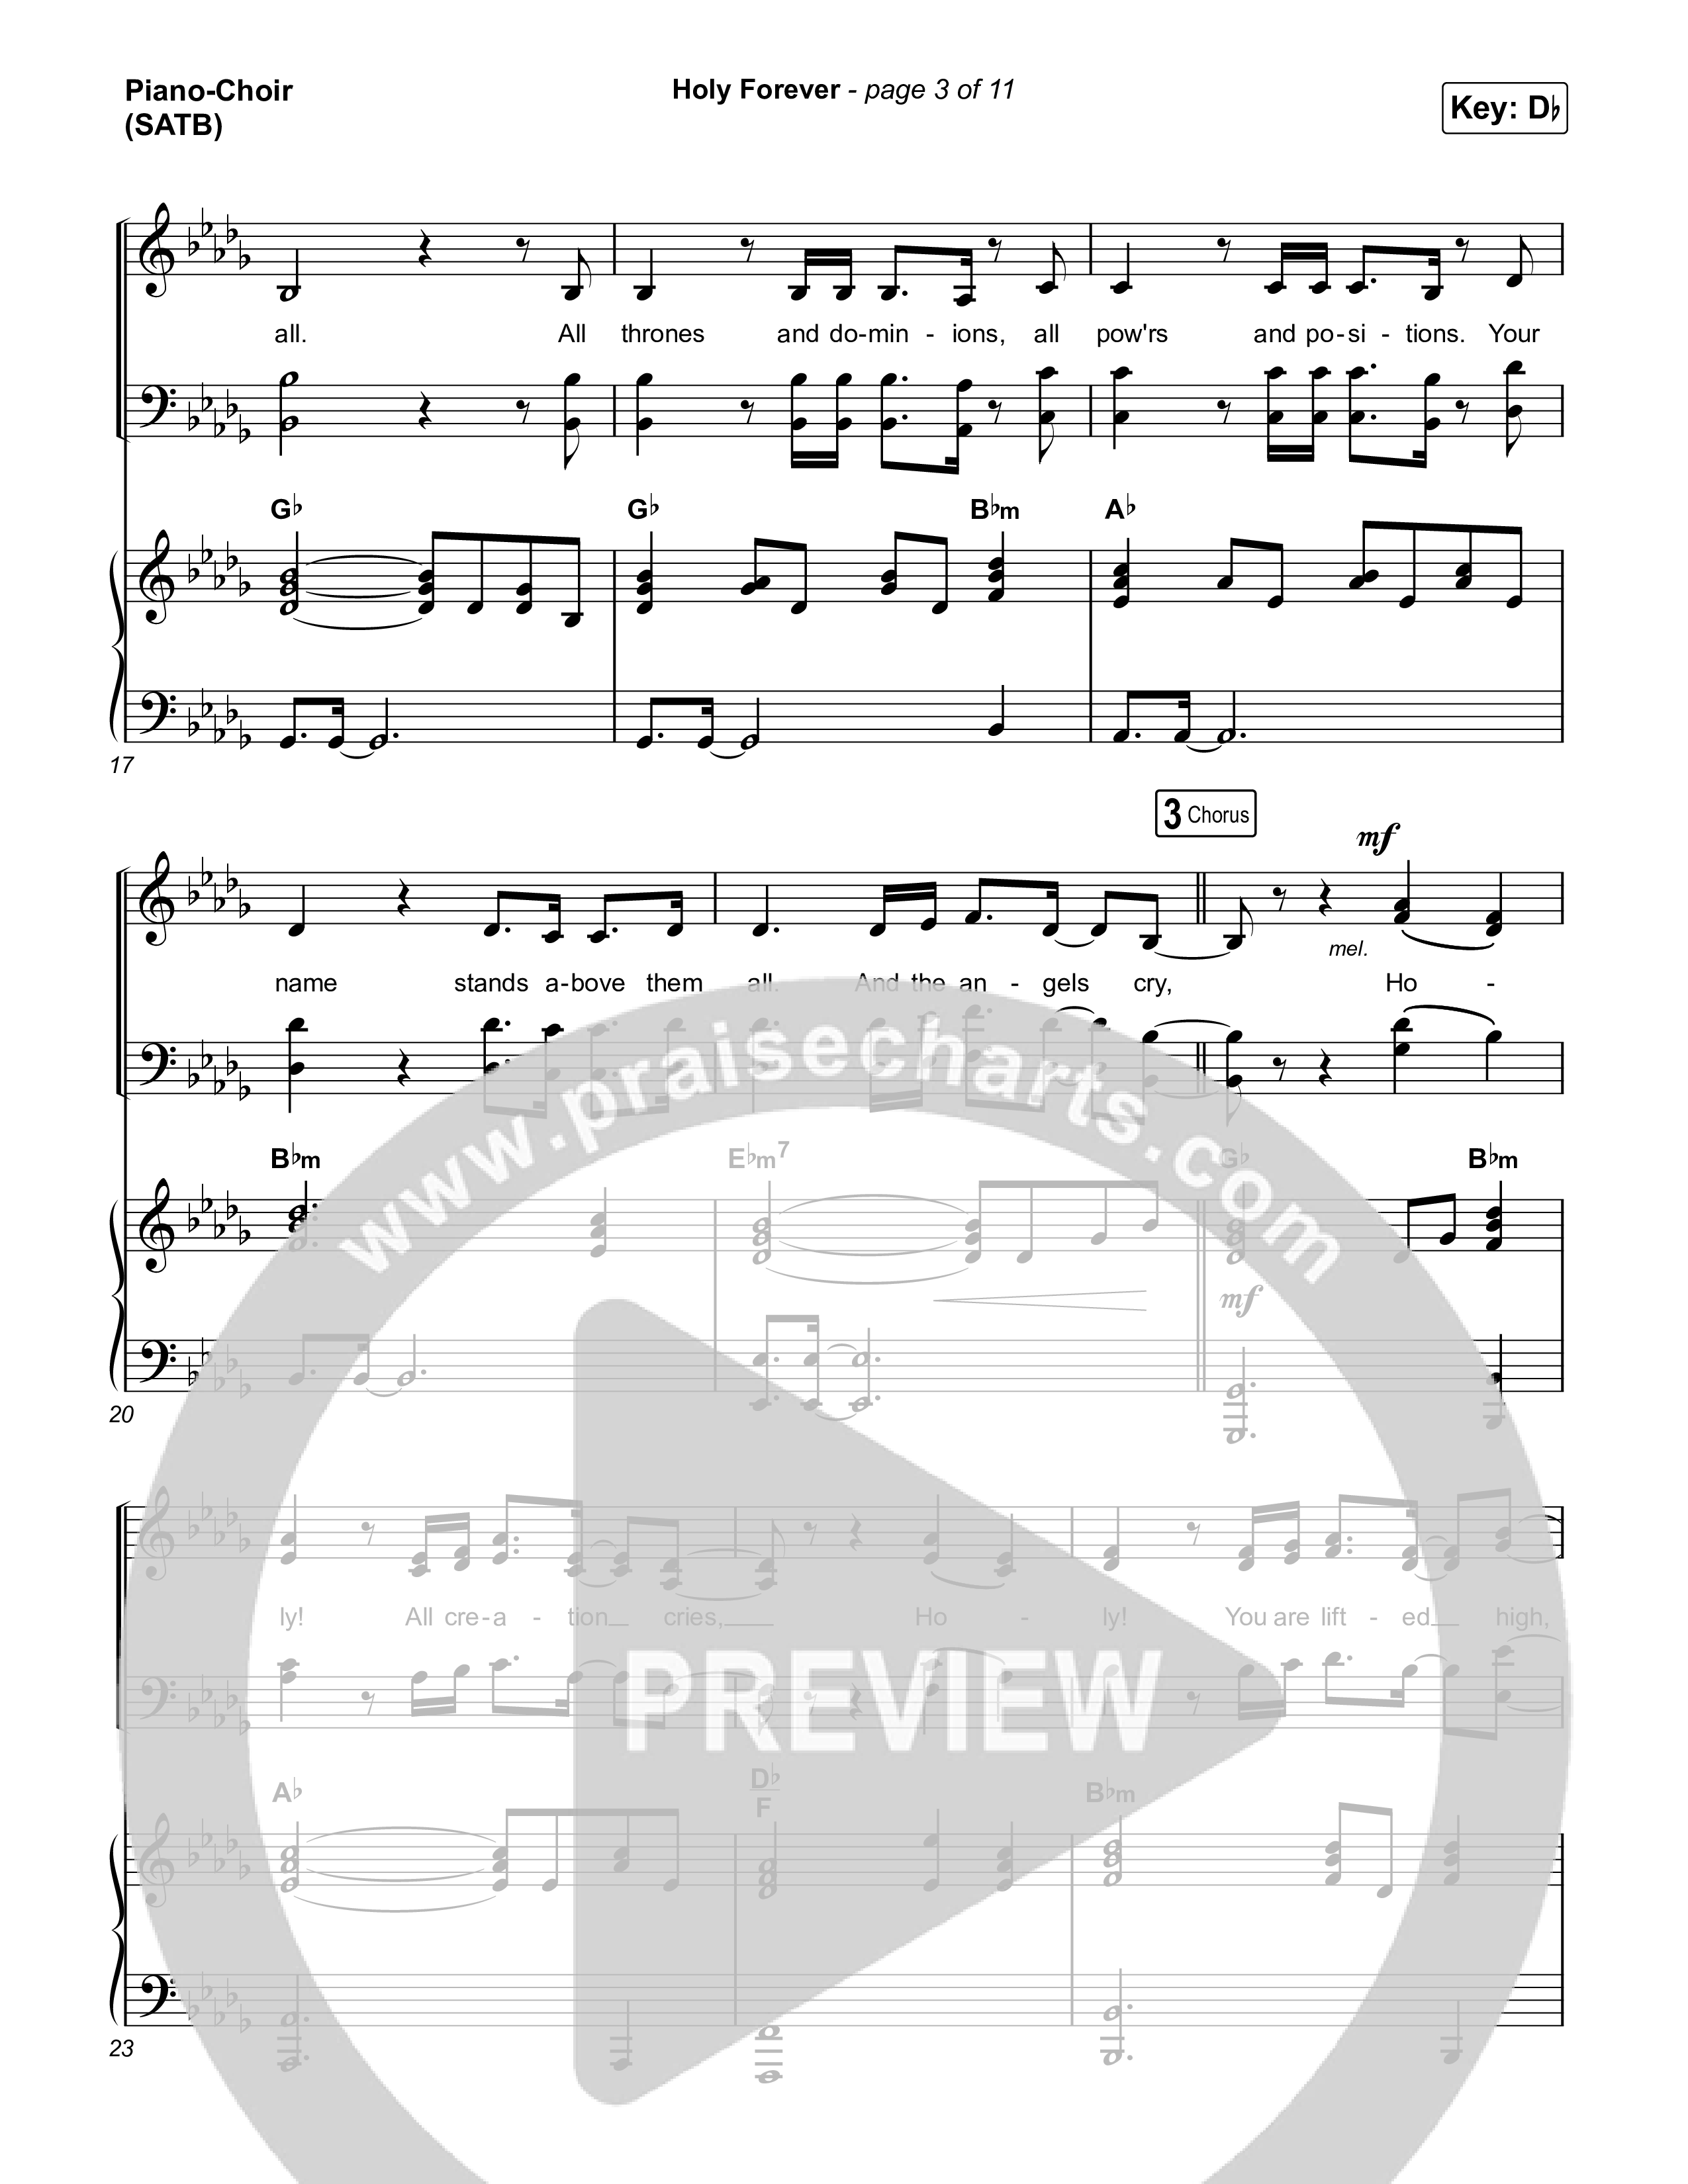 Holy Forever Piano/Vocal (SATB) (Chris Tomlin)